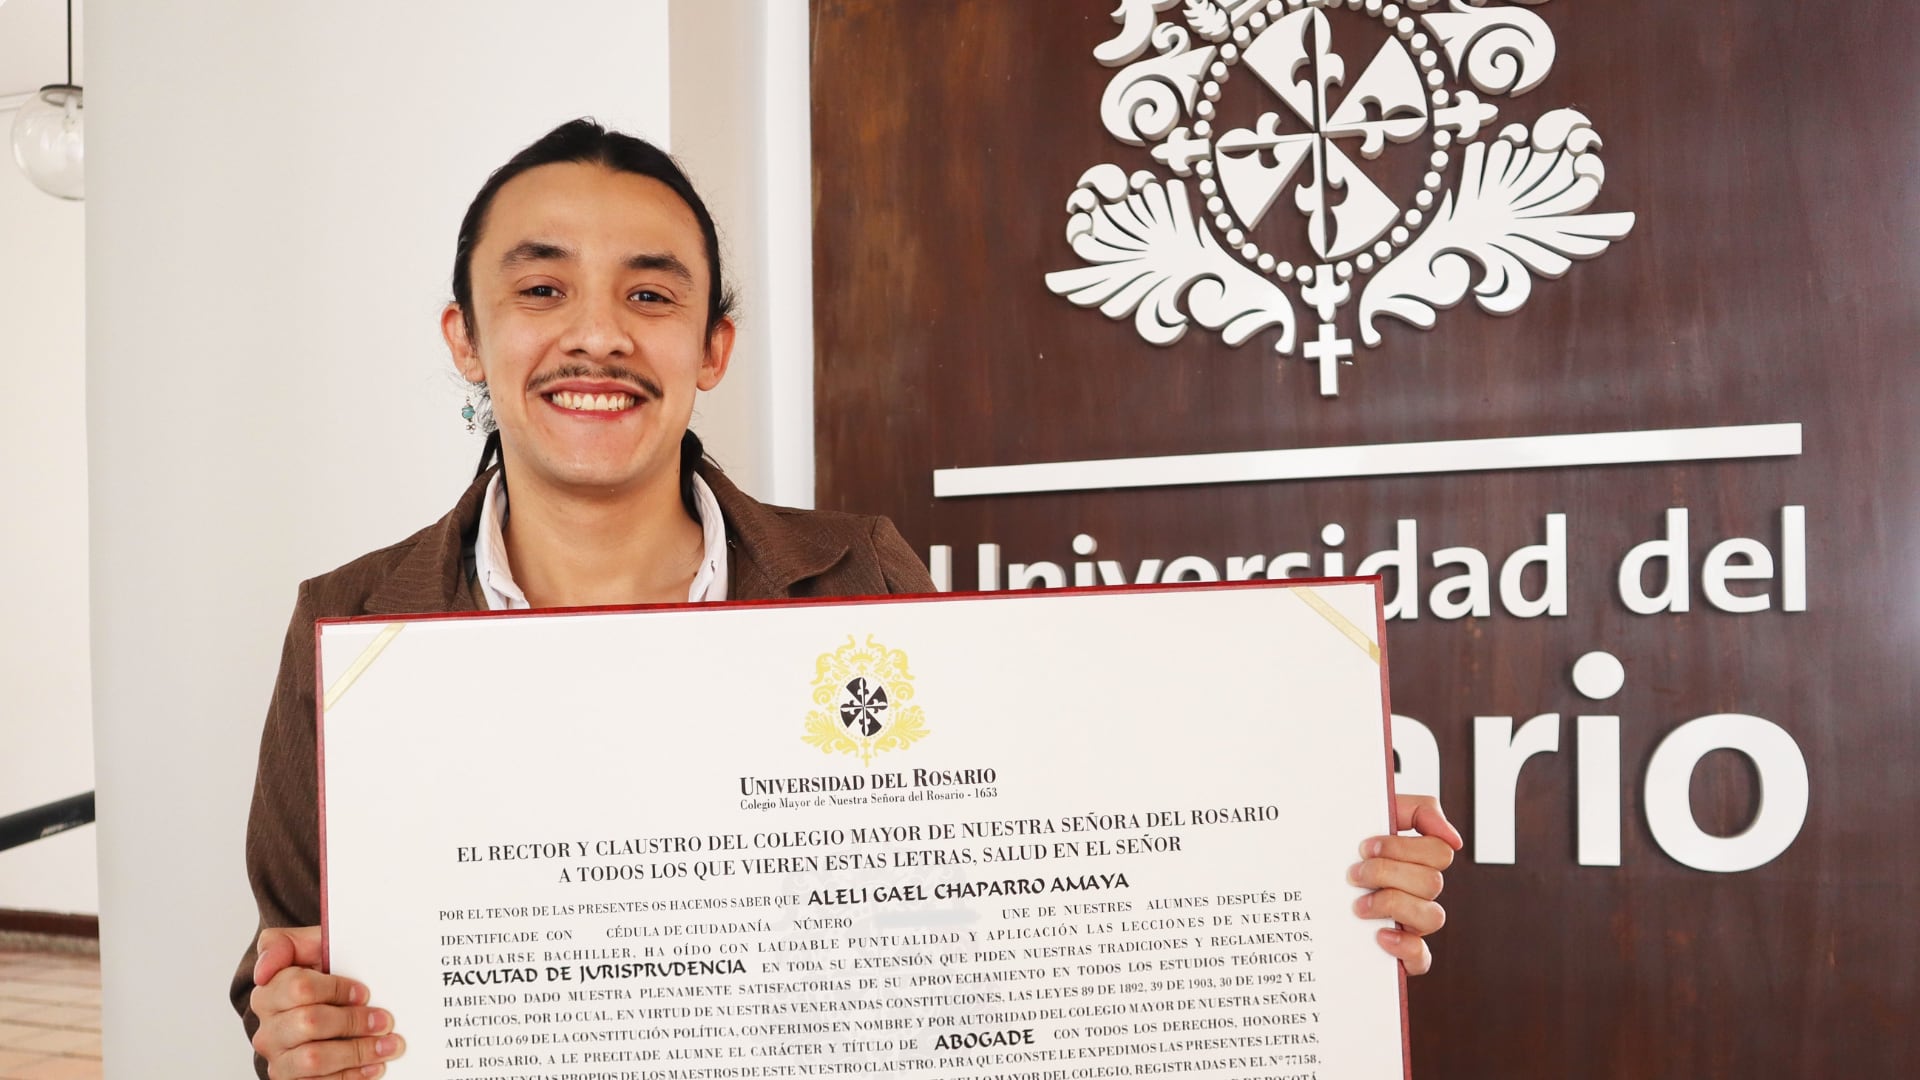 Conozca al primer abogade del país que se graduó en su título con lenguaje inclusivo